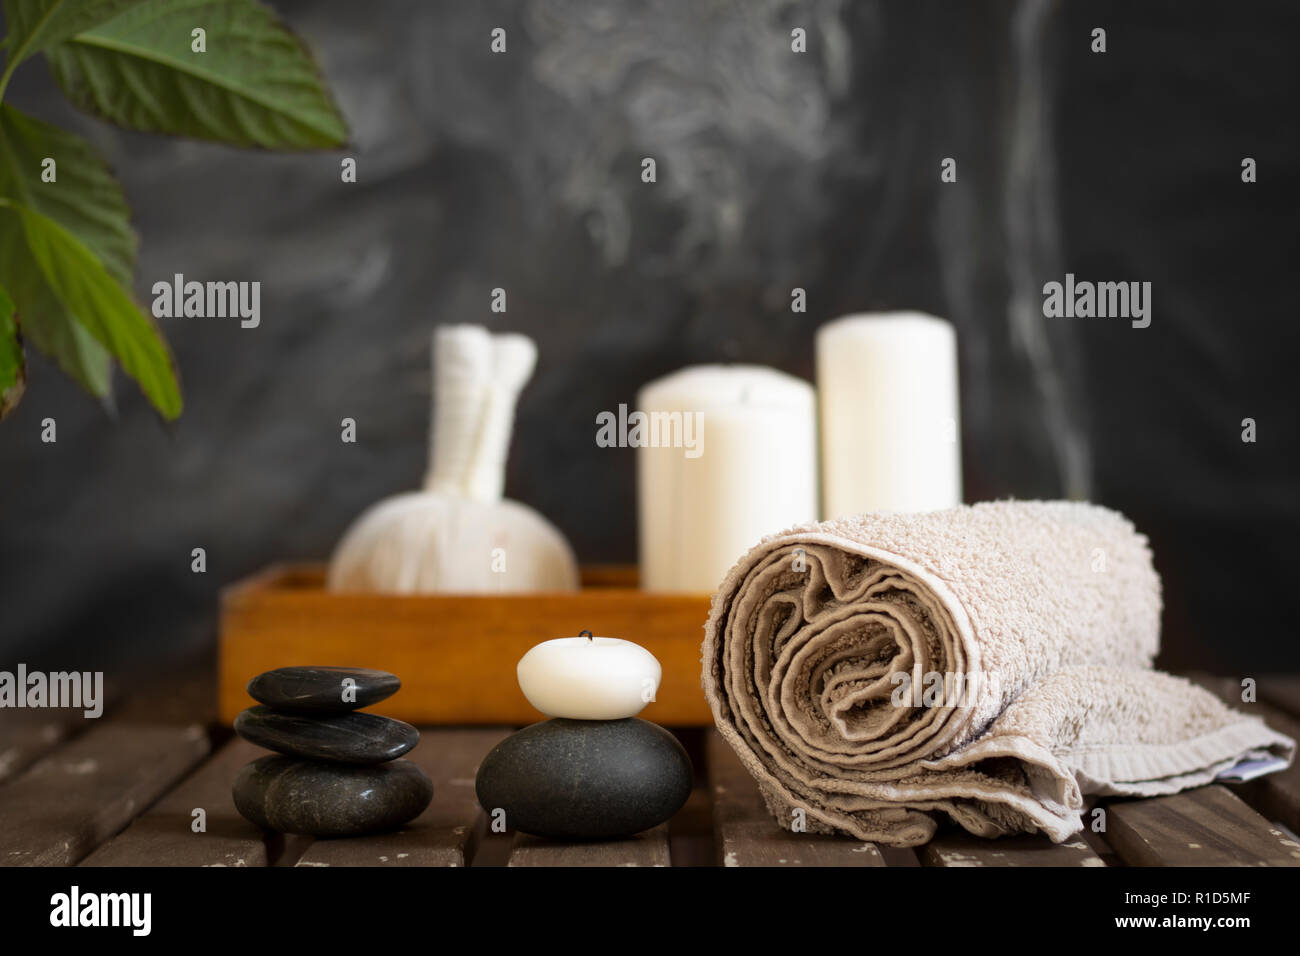 keten nek moed spa wellness objects arrangement Stock Photo - Alamy